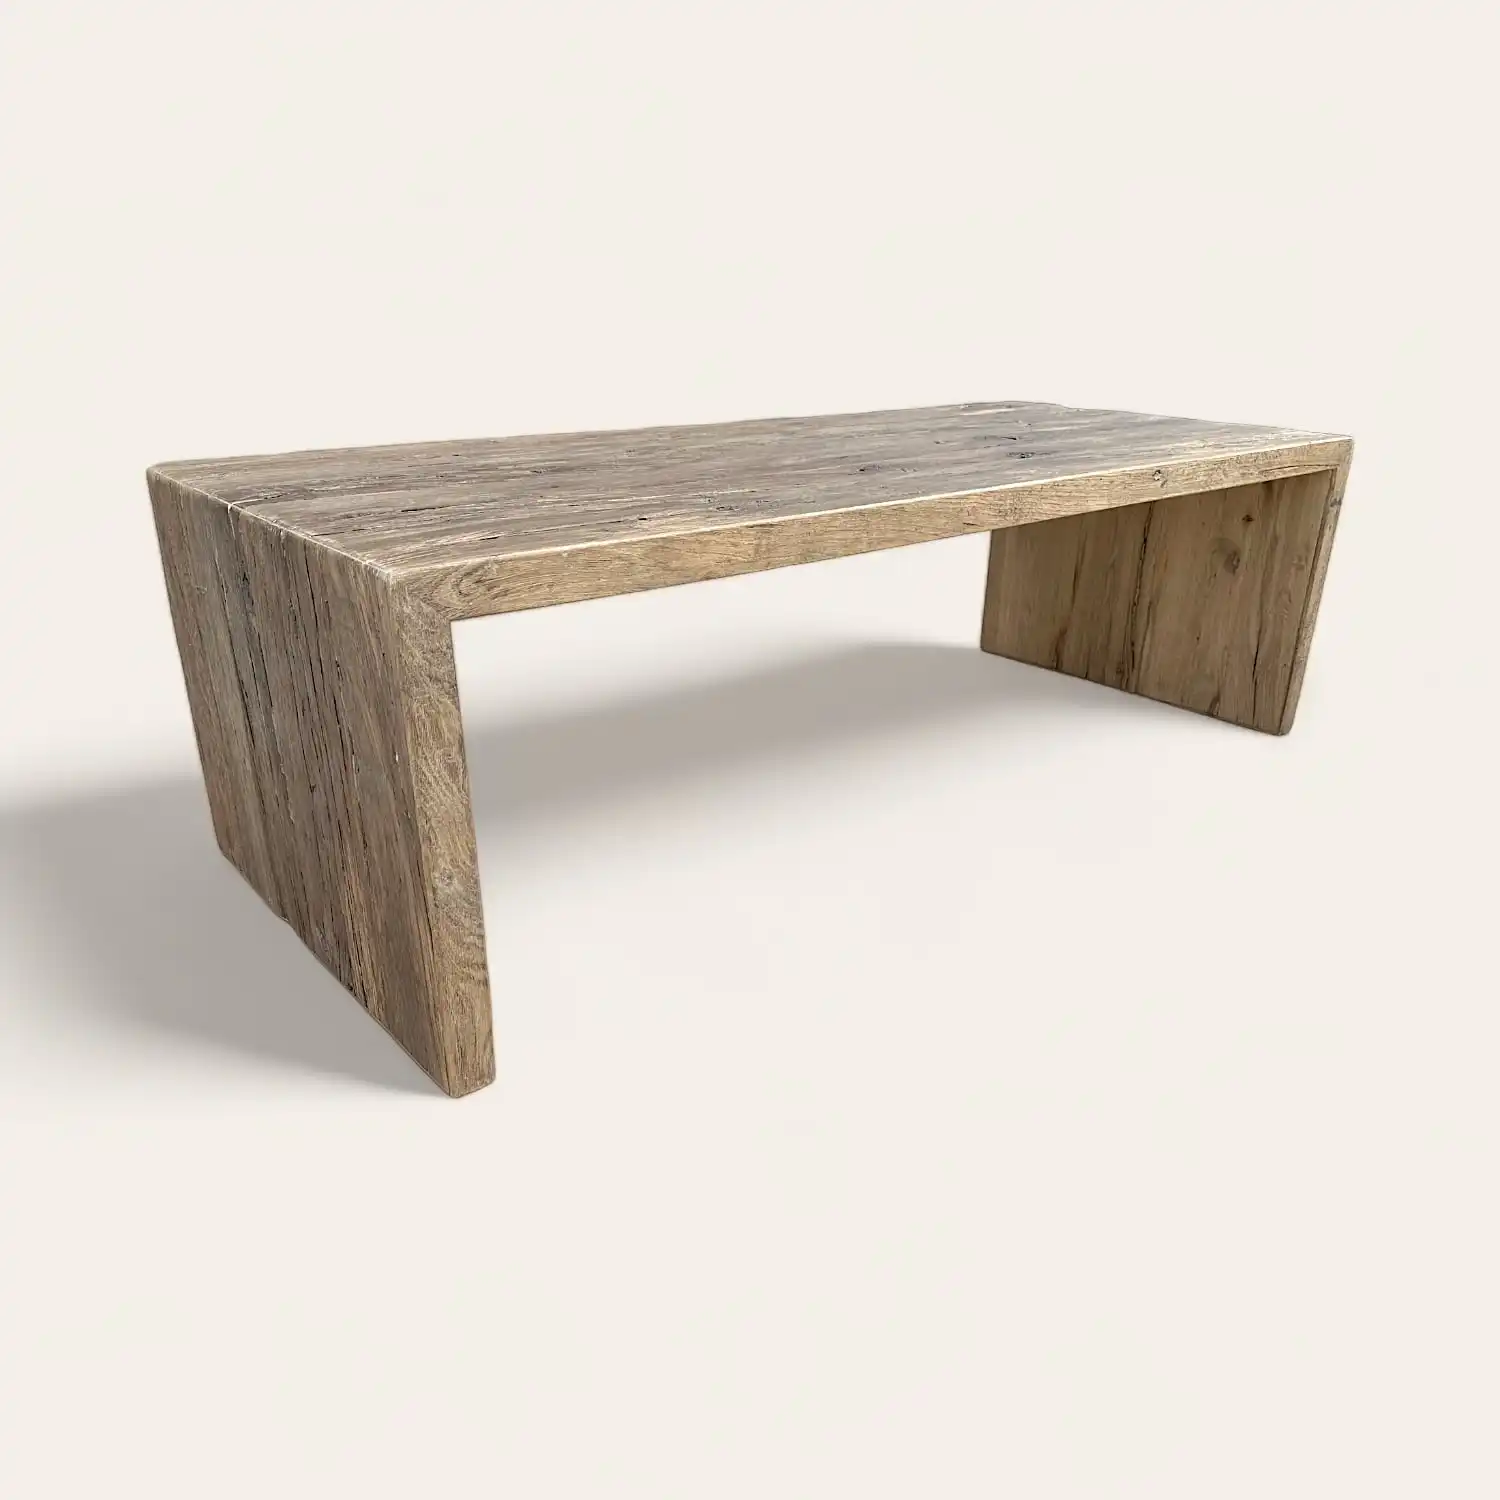  Une table basse en bois rustique sur fond blanc. 